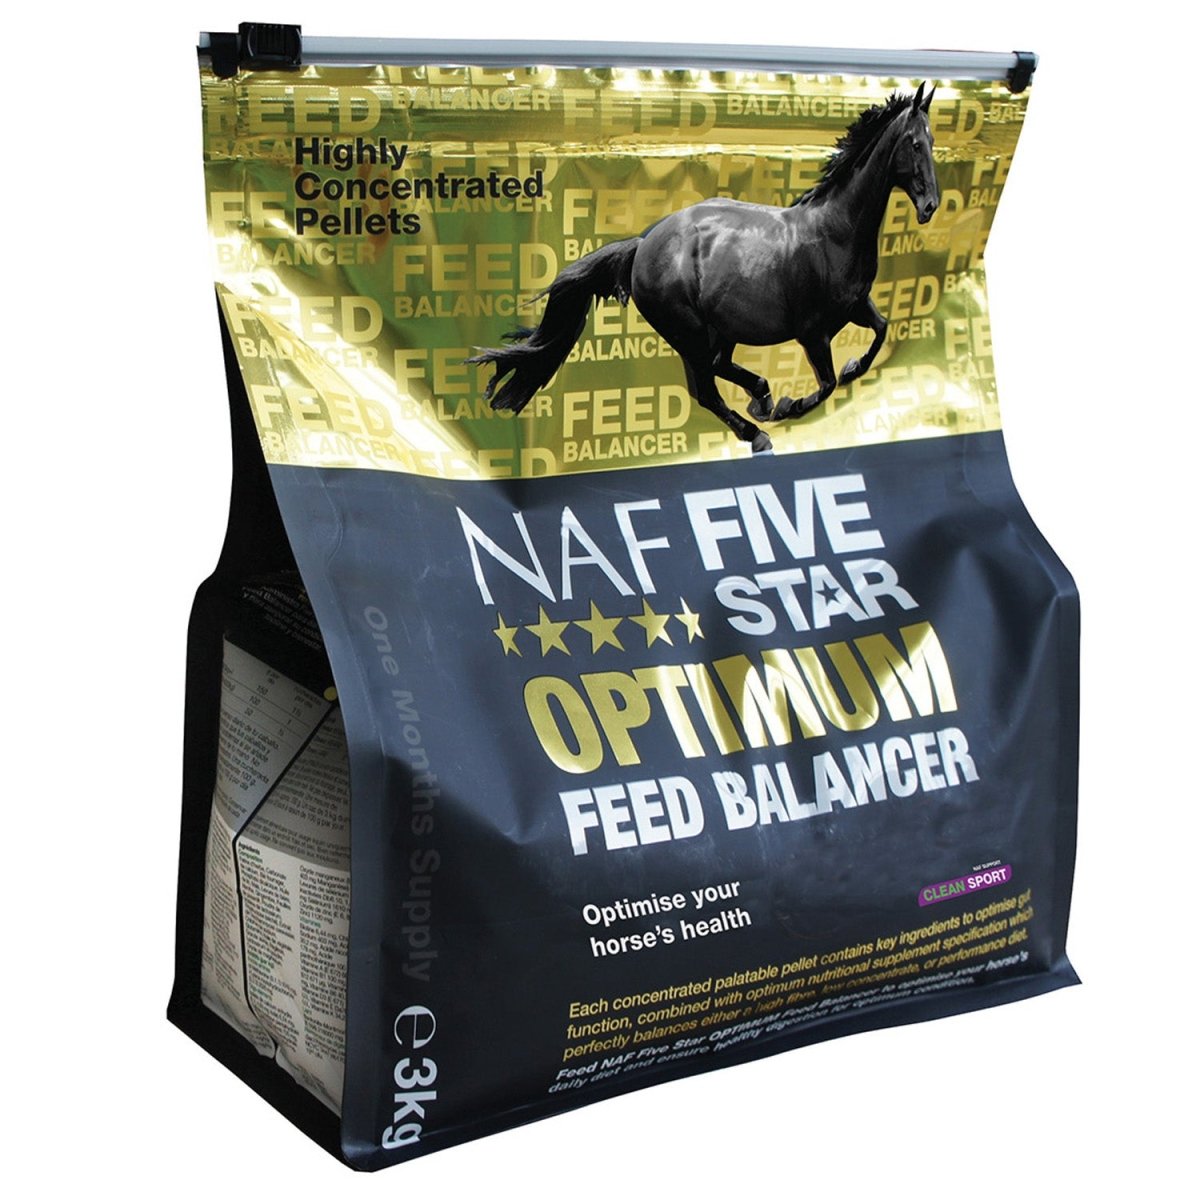 Naf Five Star Optimum Feed Balancer - 3Kg -